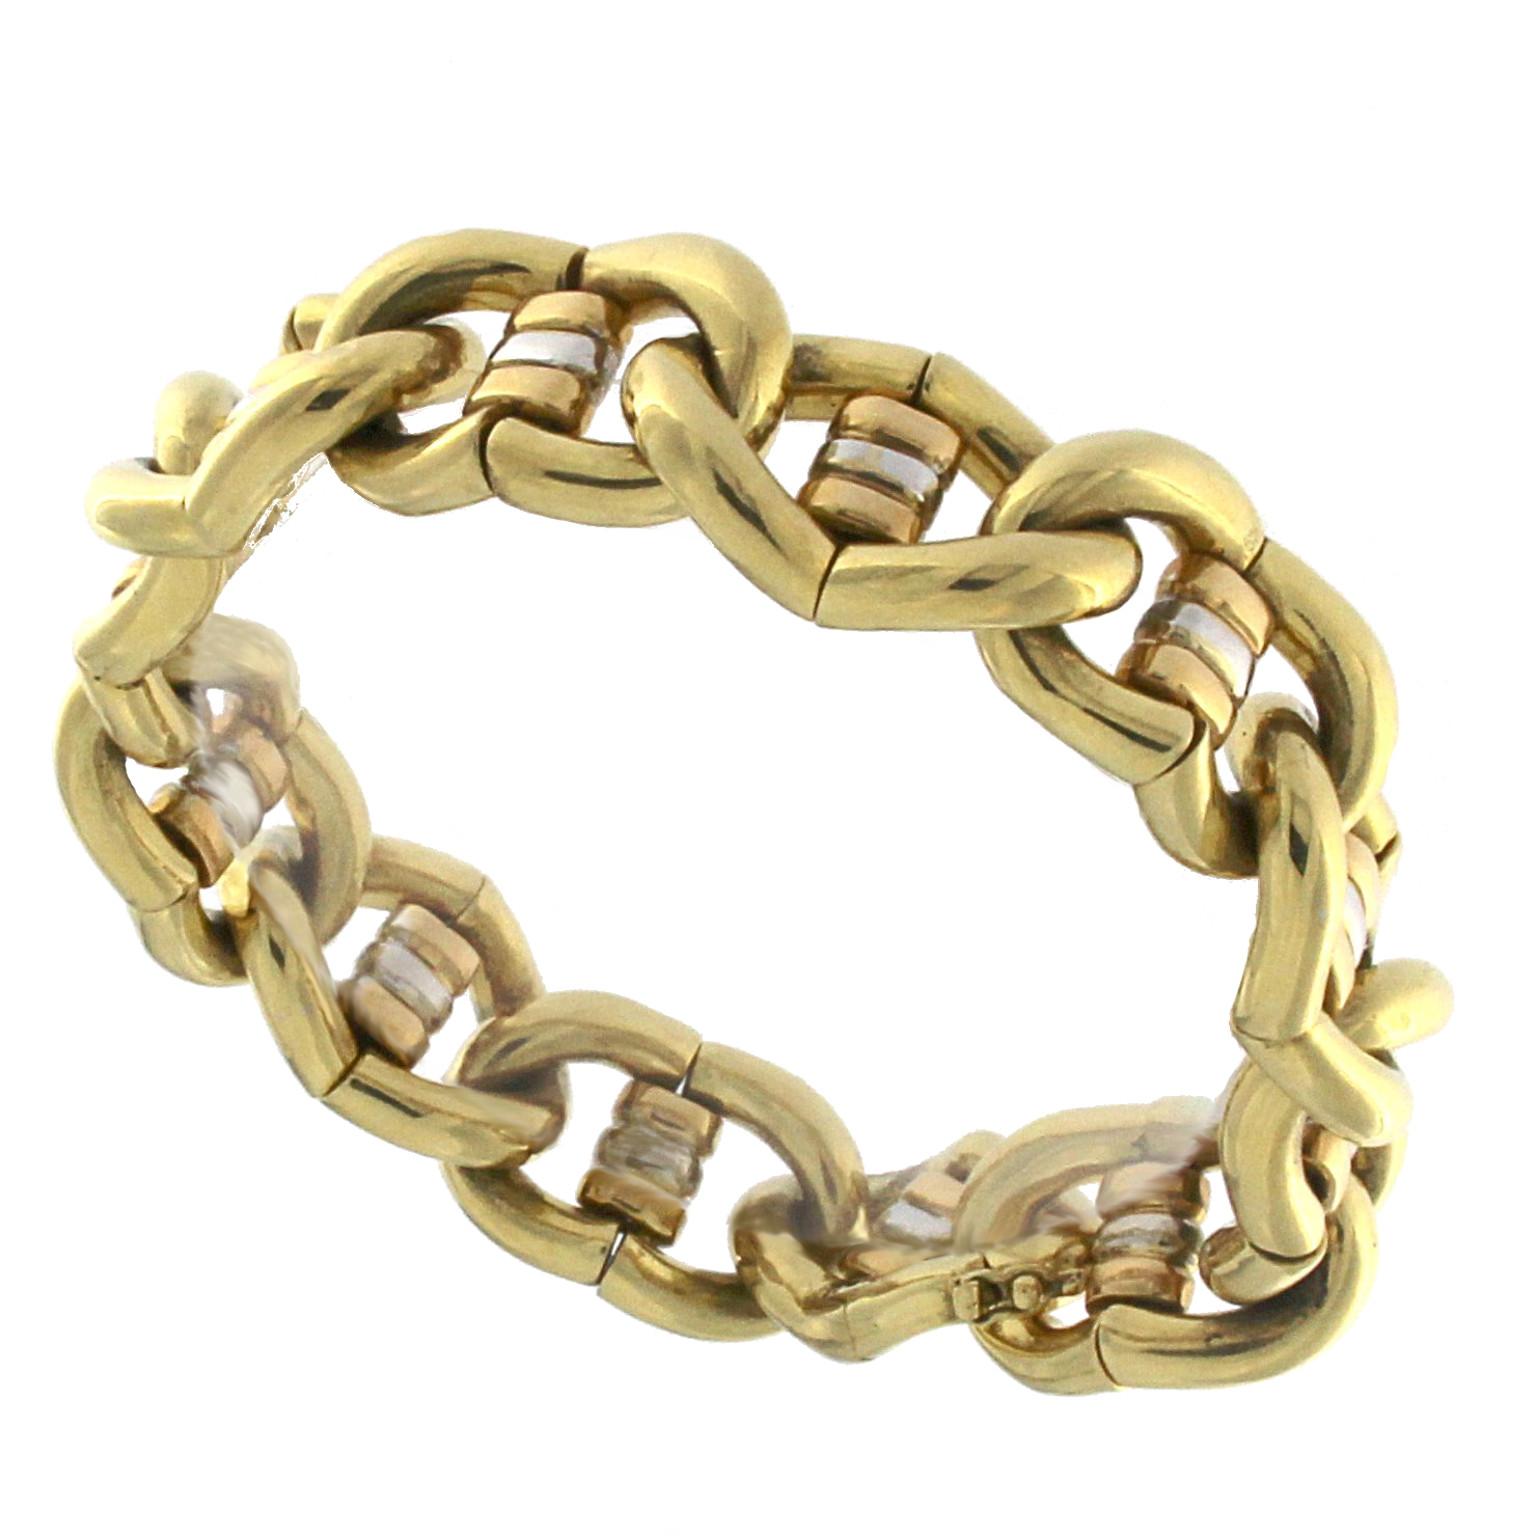 Olivo Micheletto Chain Bracelets